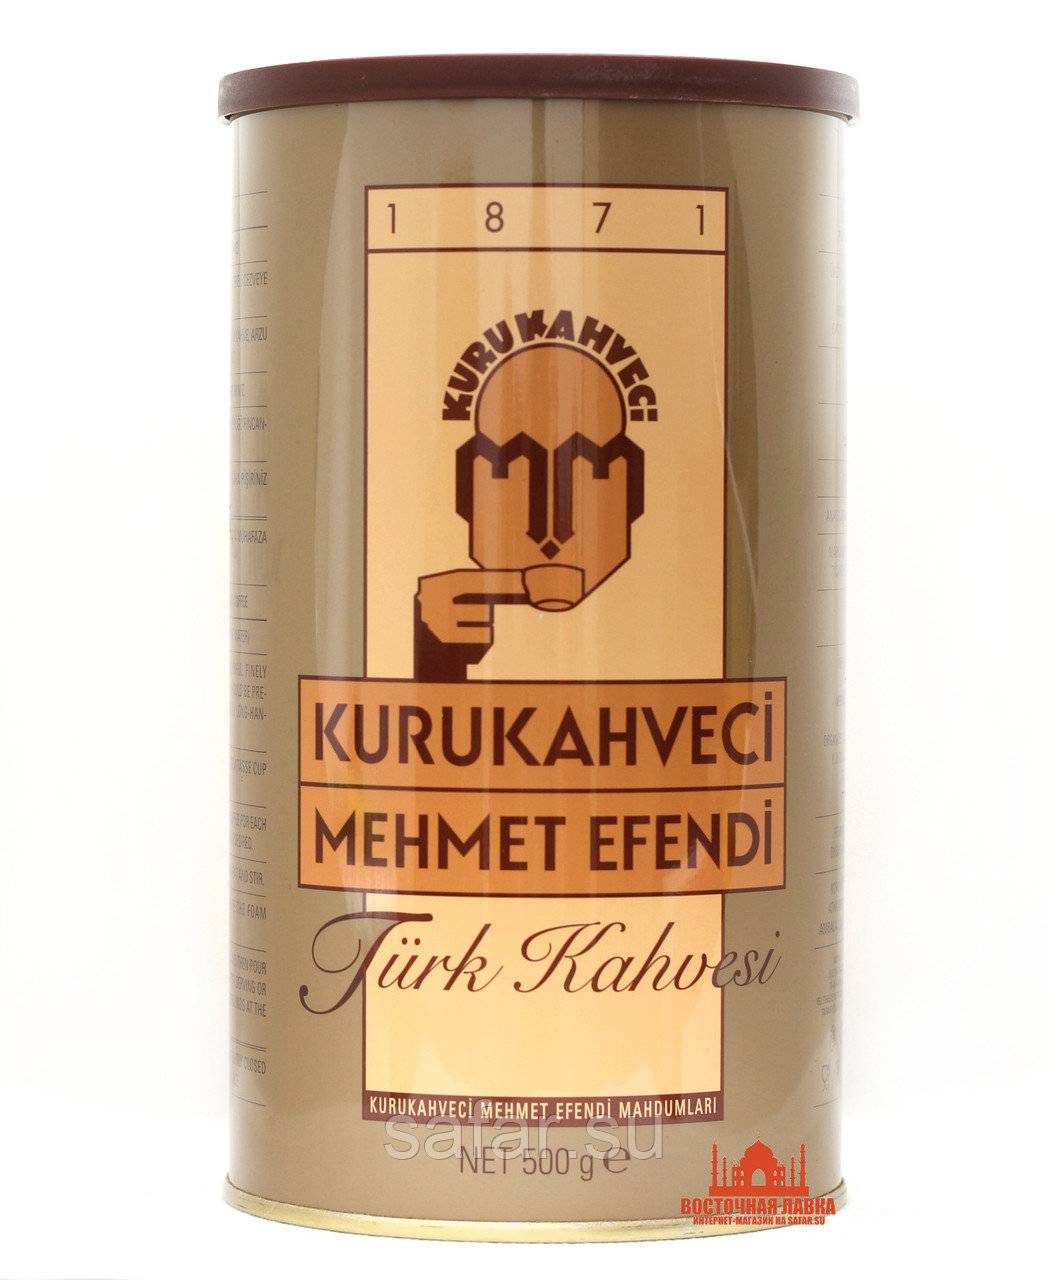 Турецкий кофе kurukahveci mehmet efendi (мехмет эфенди)